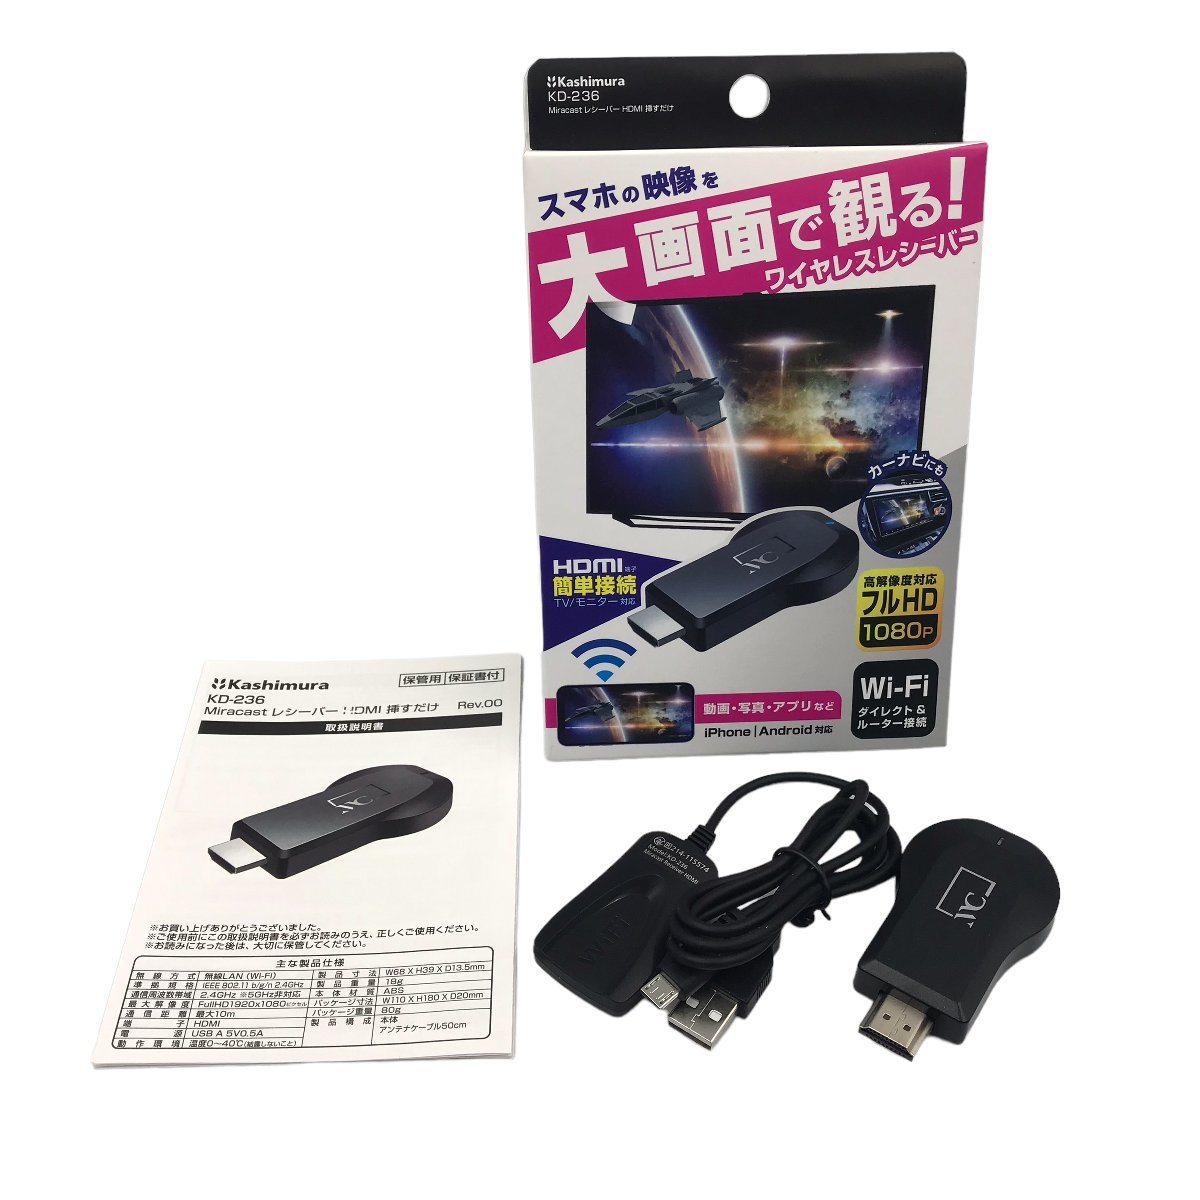 ♪ Kashimura カシムラ Miracast レシーバー HDMI 挿すだけ (KD-236) 未使用 ワイヤレス レシーバー ネコポス可 大画面で見れる_画像1